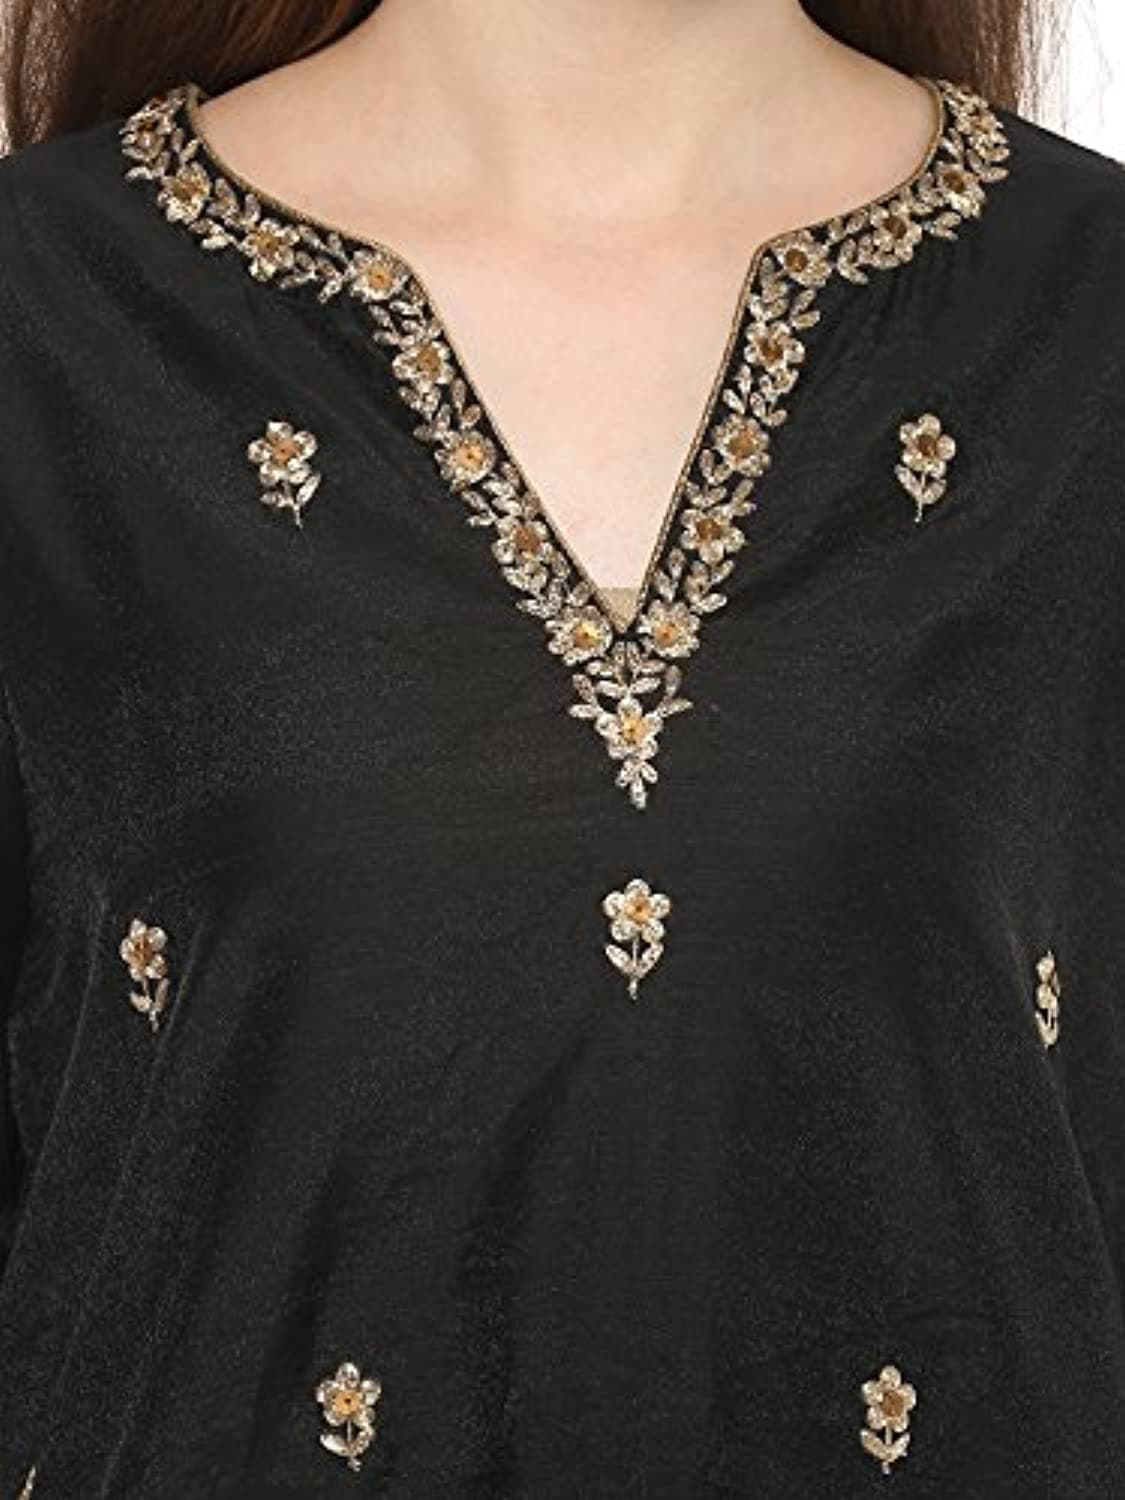 Black A Line cotton A Line Salwar Suit Set by Bhama Couture